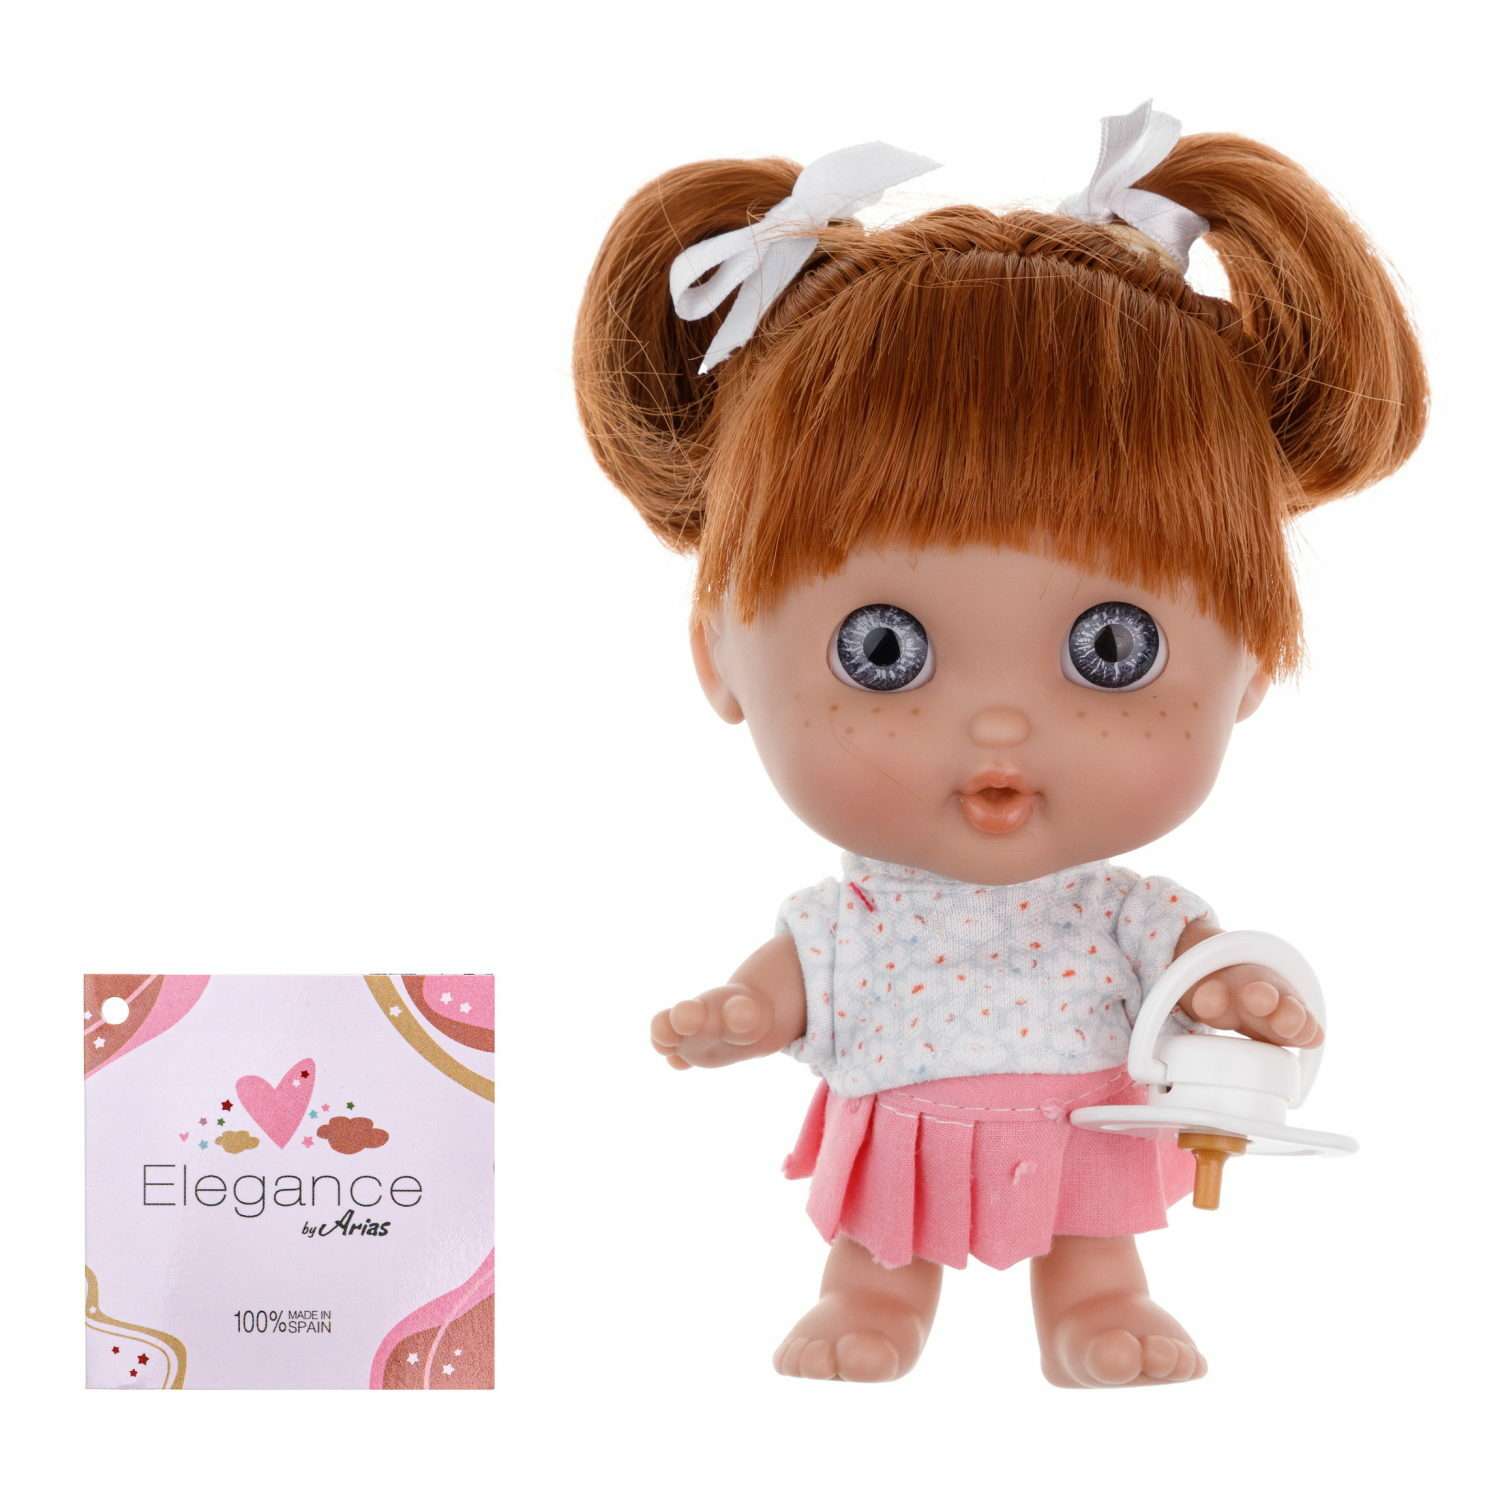 Кукла Arias elegance pequitas с рыжими волосами c cоской в розовой юбке и белой кофточке 17 см Т19780-8 - фото 1